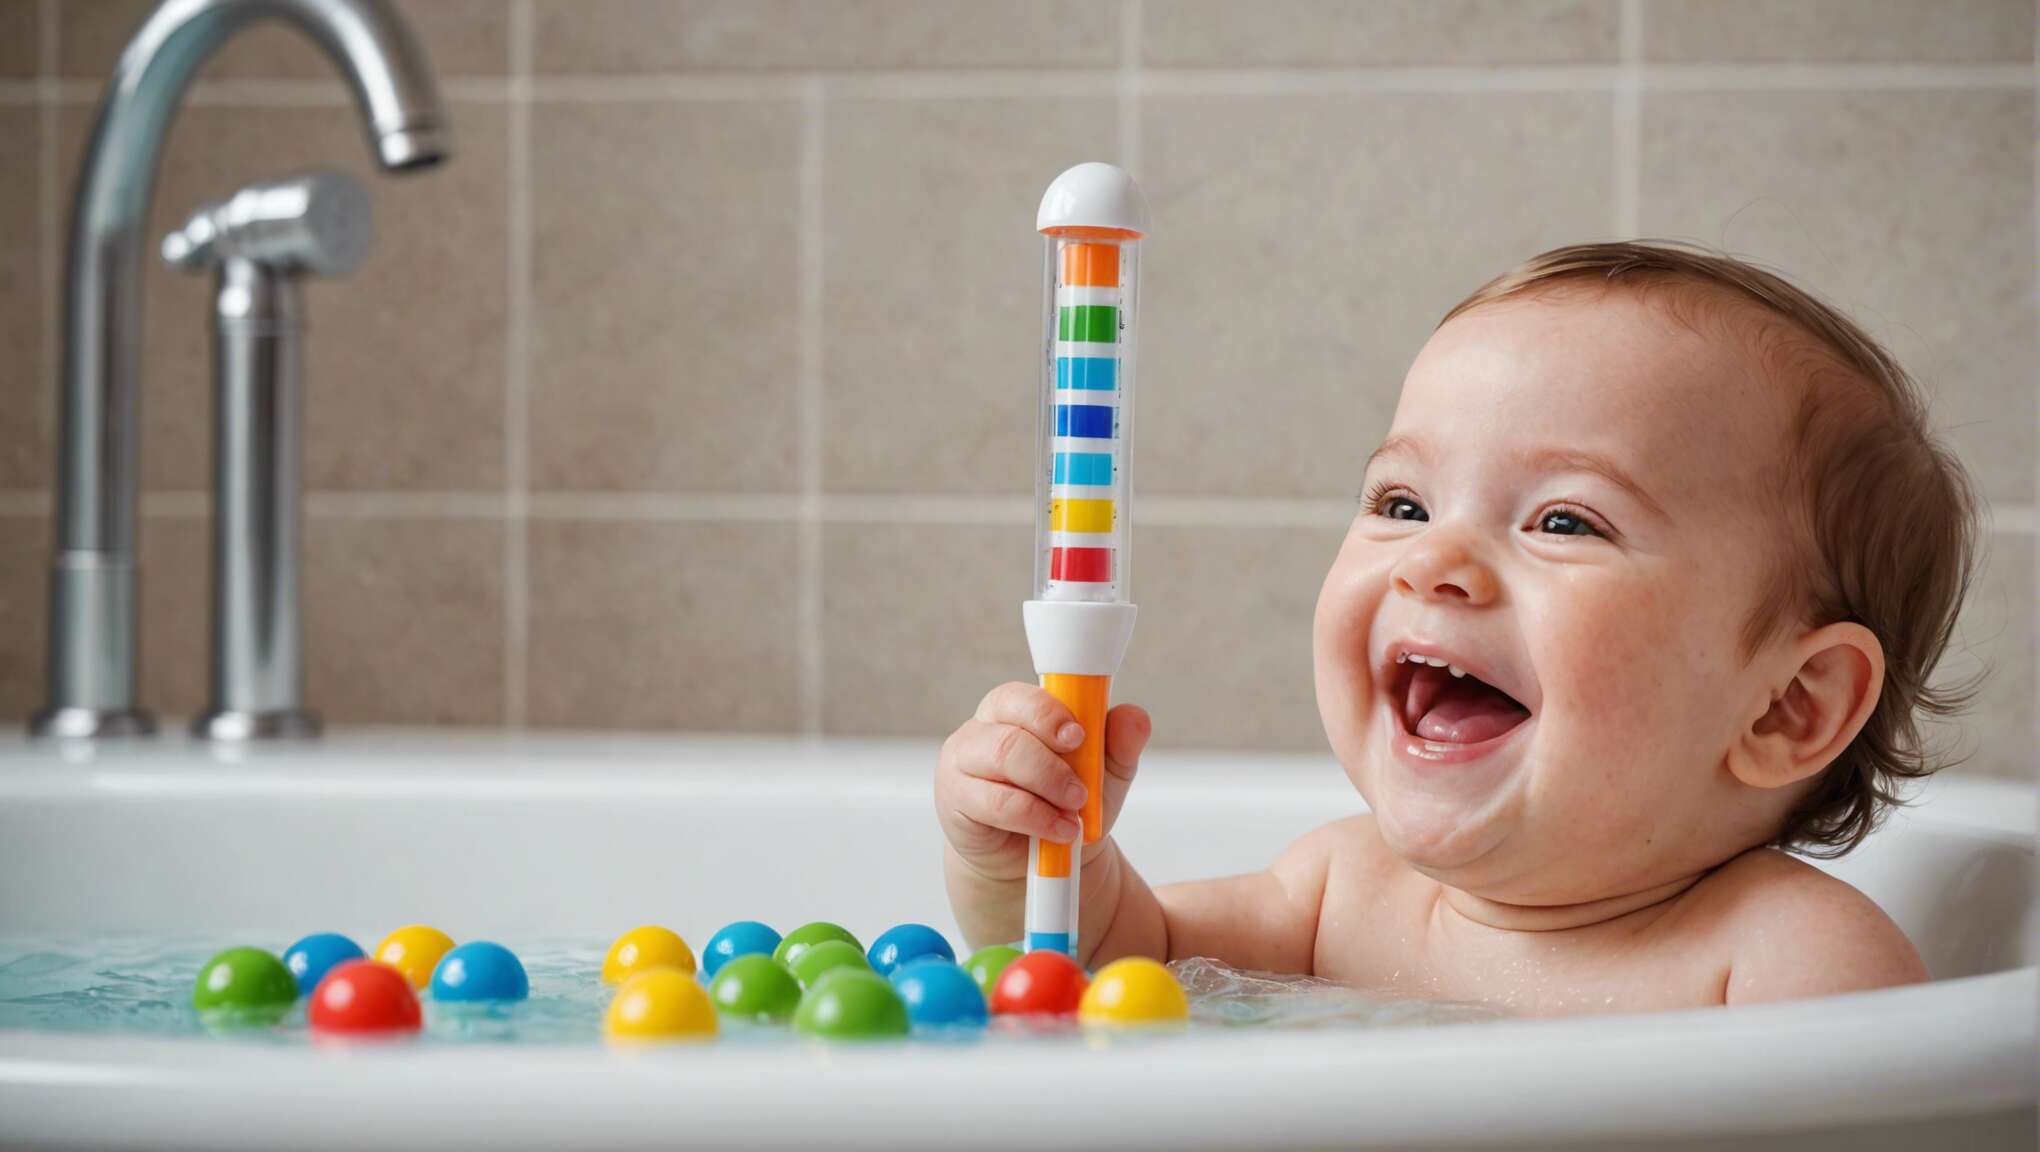 Thermomètres de bain ludiques et éducatifs : allier l'utile à l'agréable